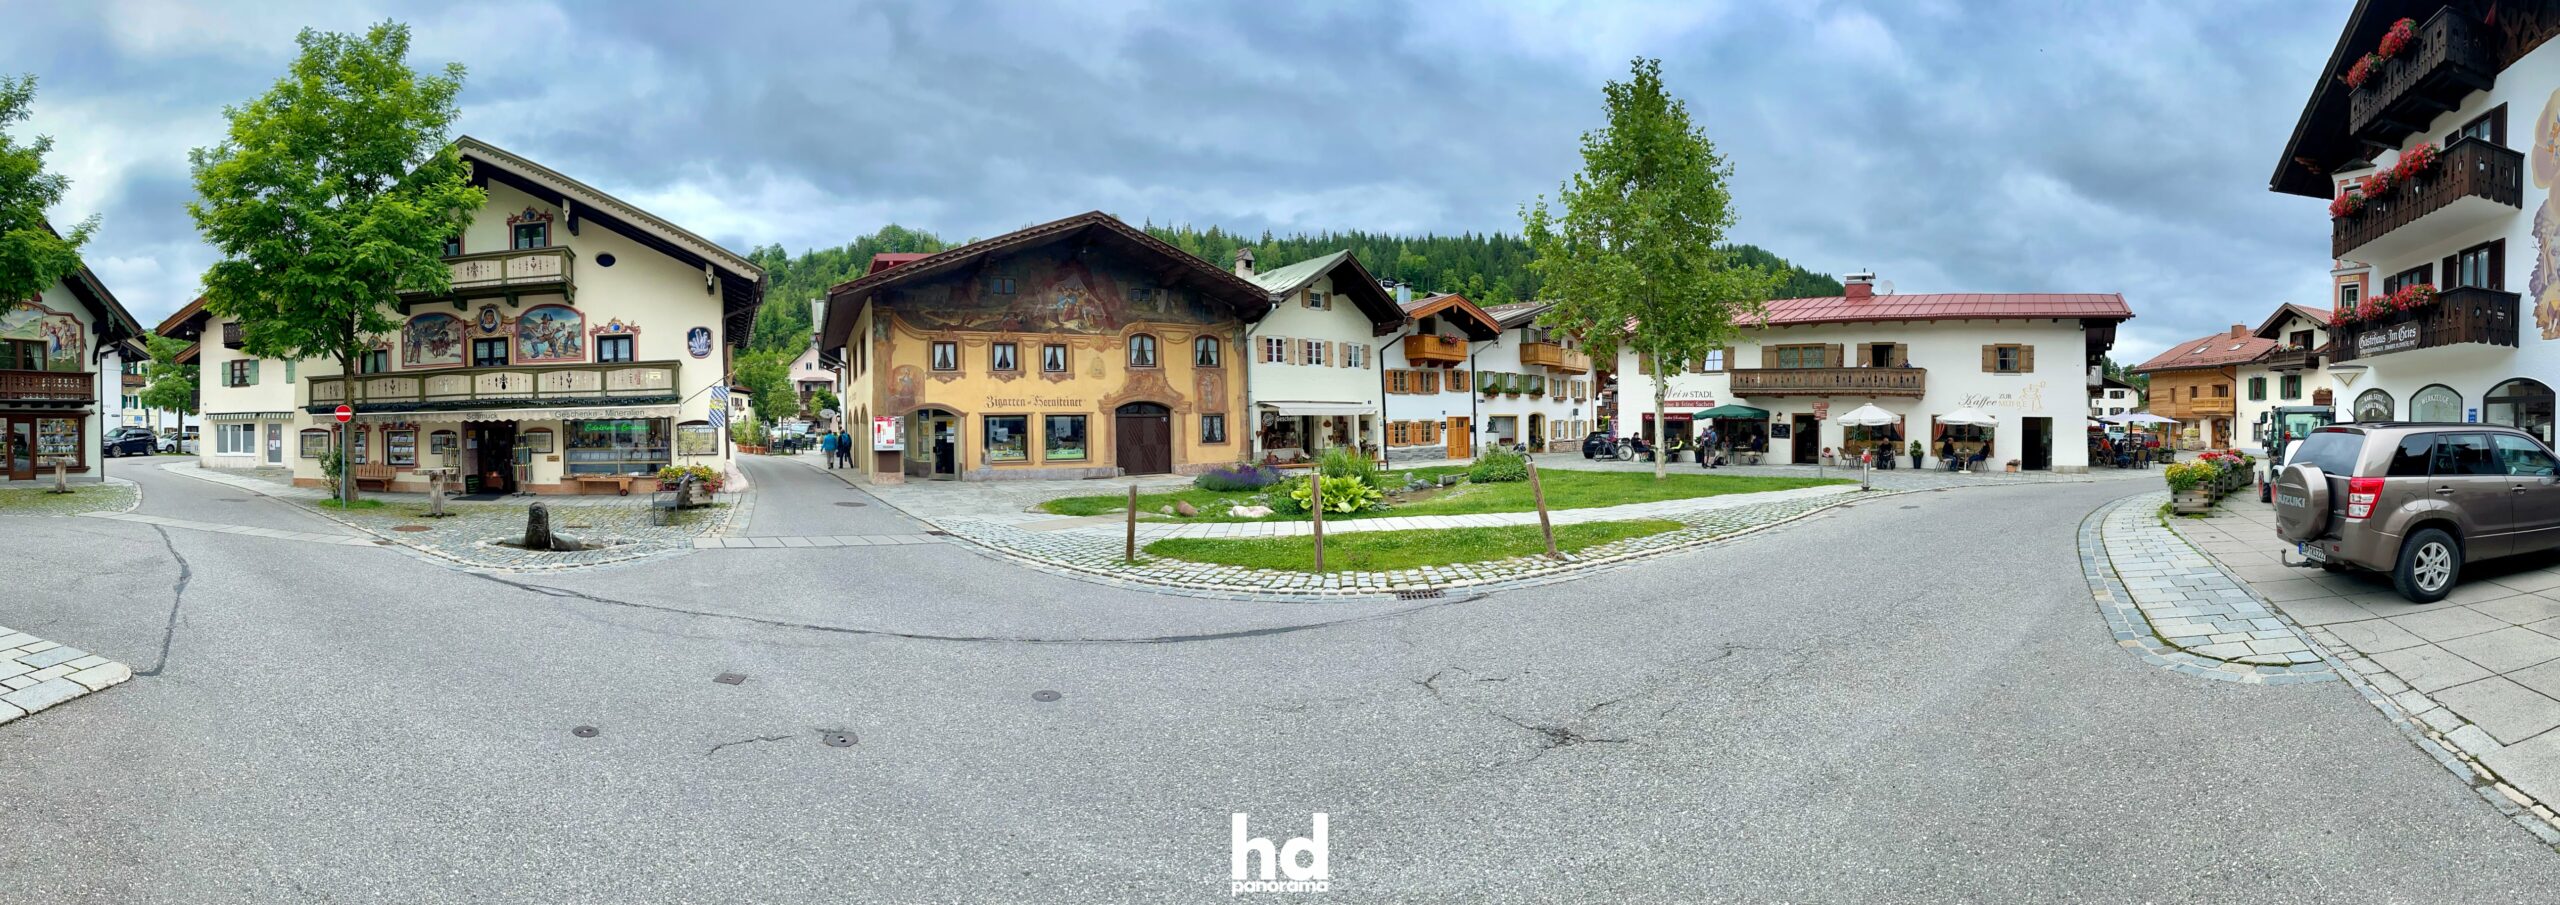 In Mittenwald, Häuser mit charakteristischer Lüftlmalerei © 2021 HD-Panorama, René Blanke